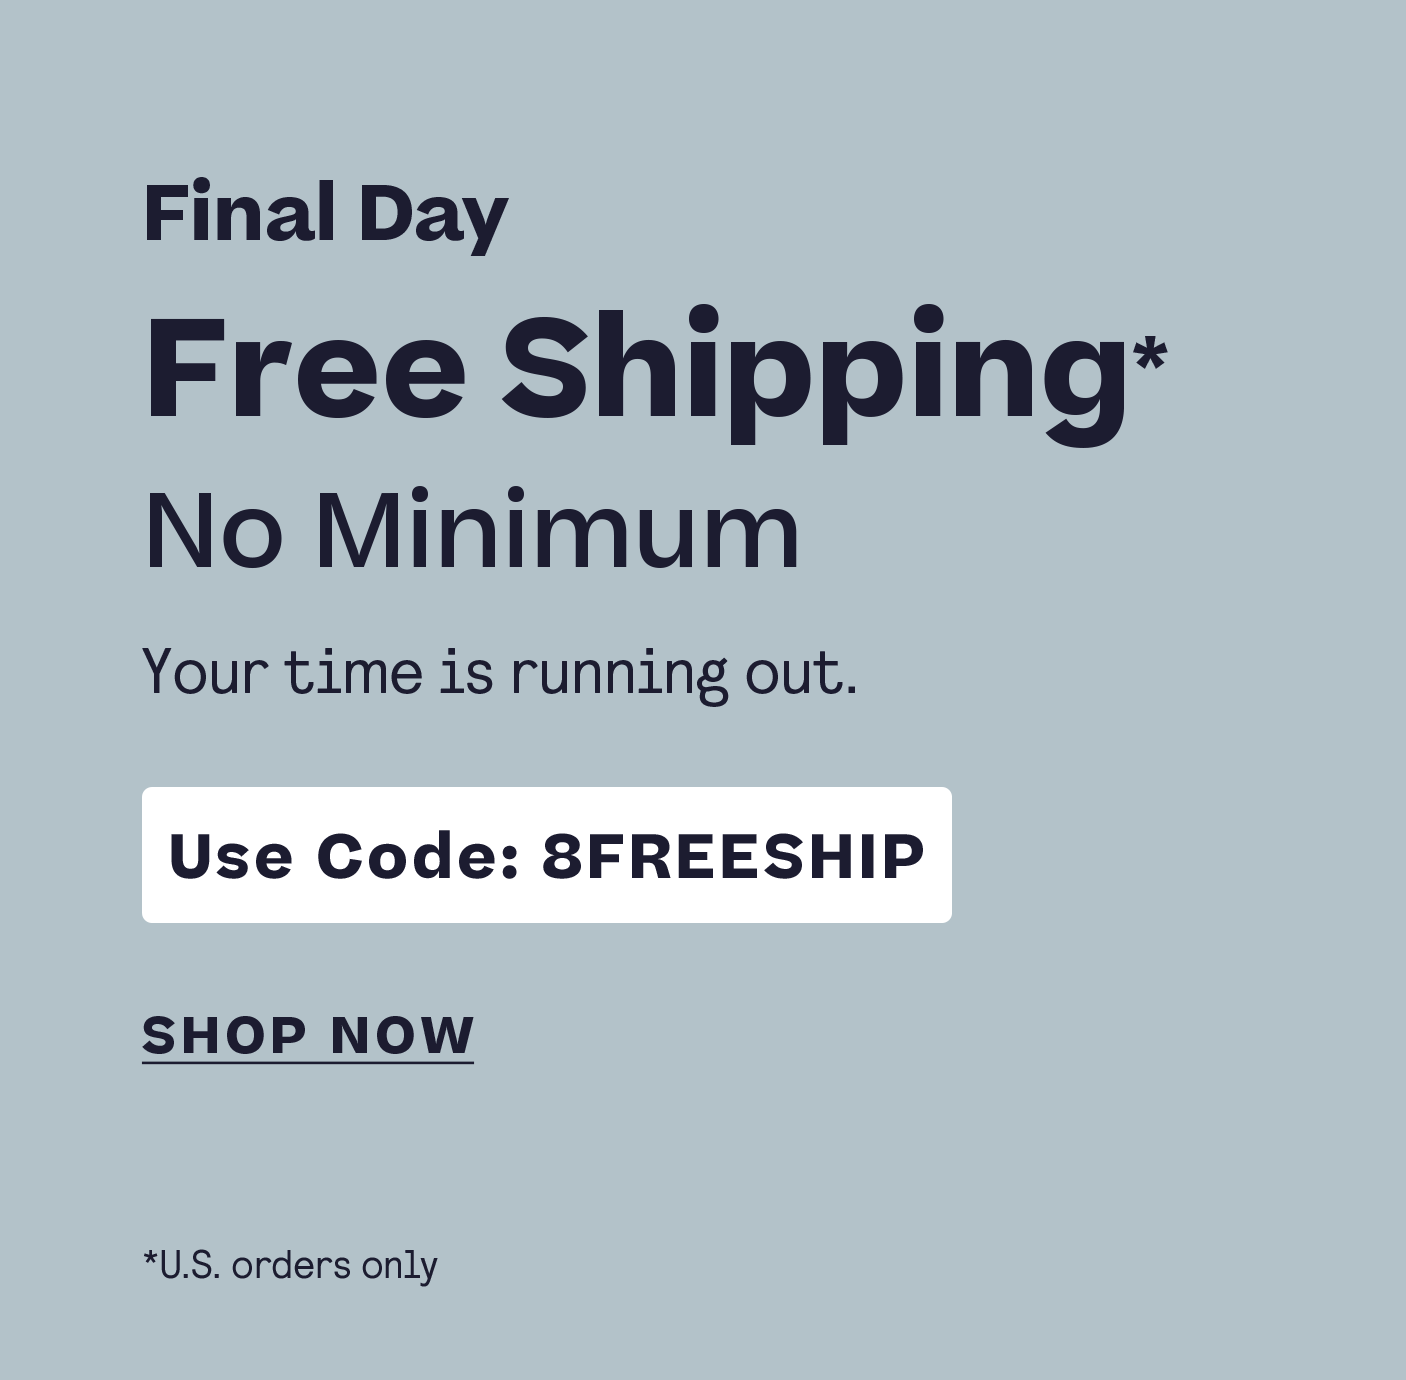 Final Day Free U.S. Shipping No Minimum Code 8FREESHIP